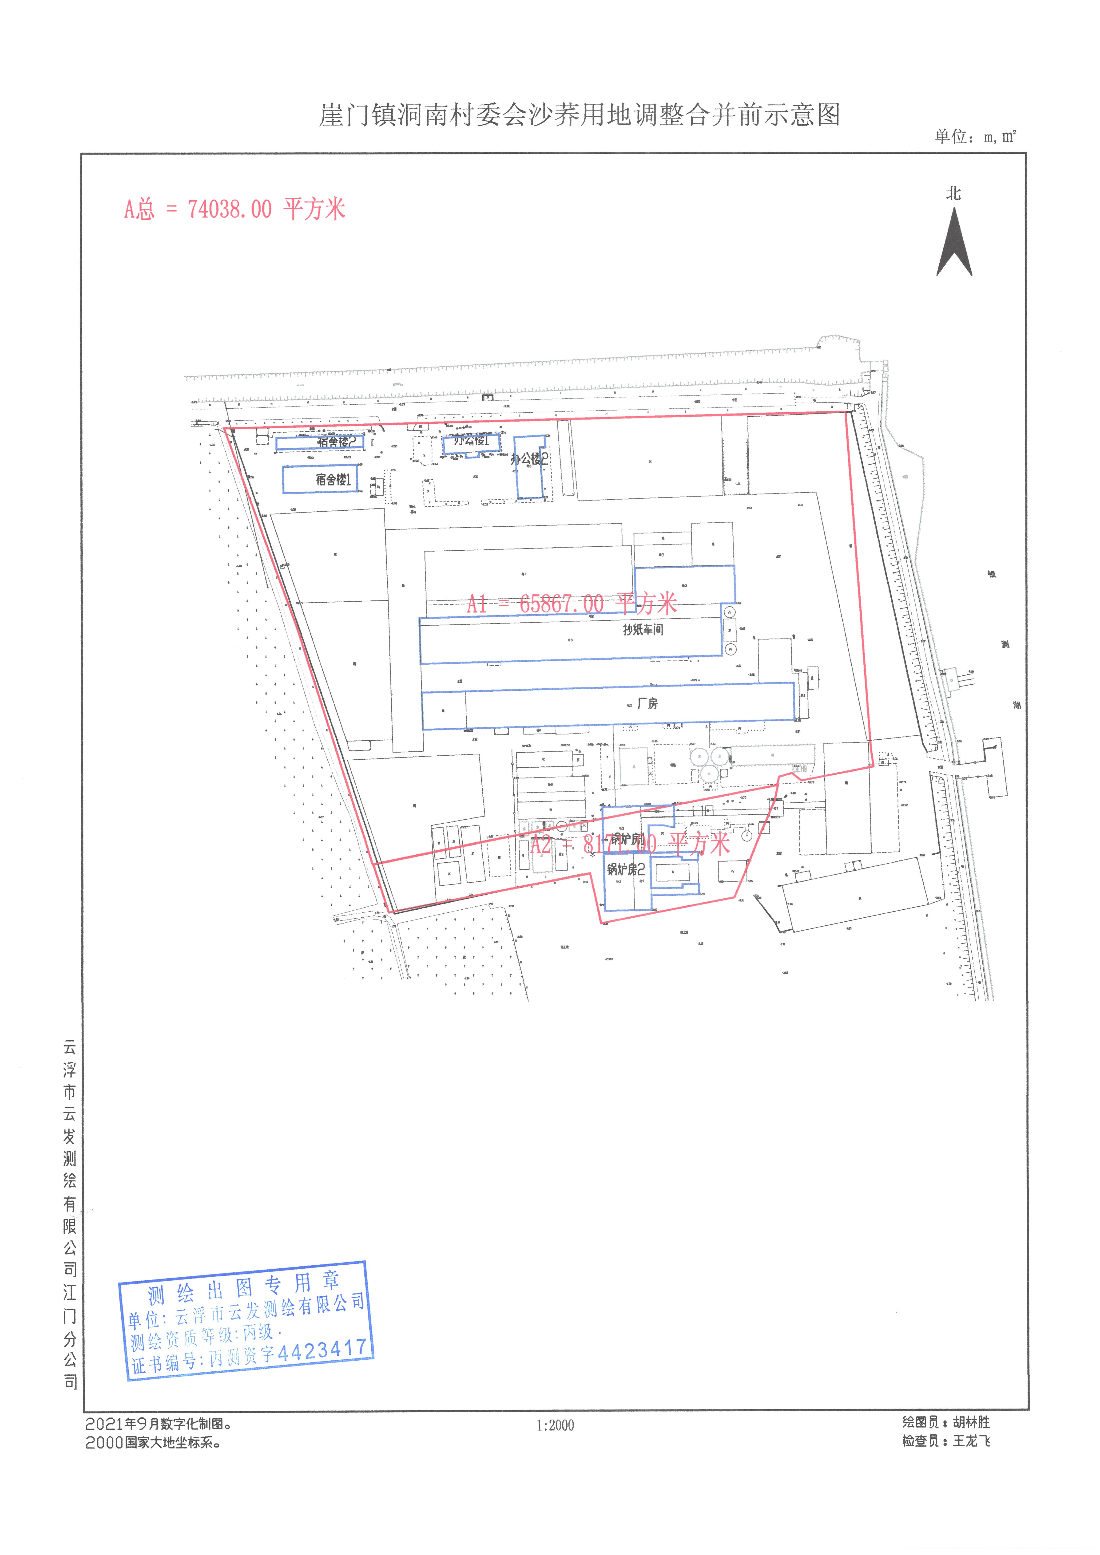 好地网--【规划公示】江门市城市总体规划（2017-2035年）草案公示